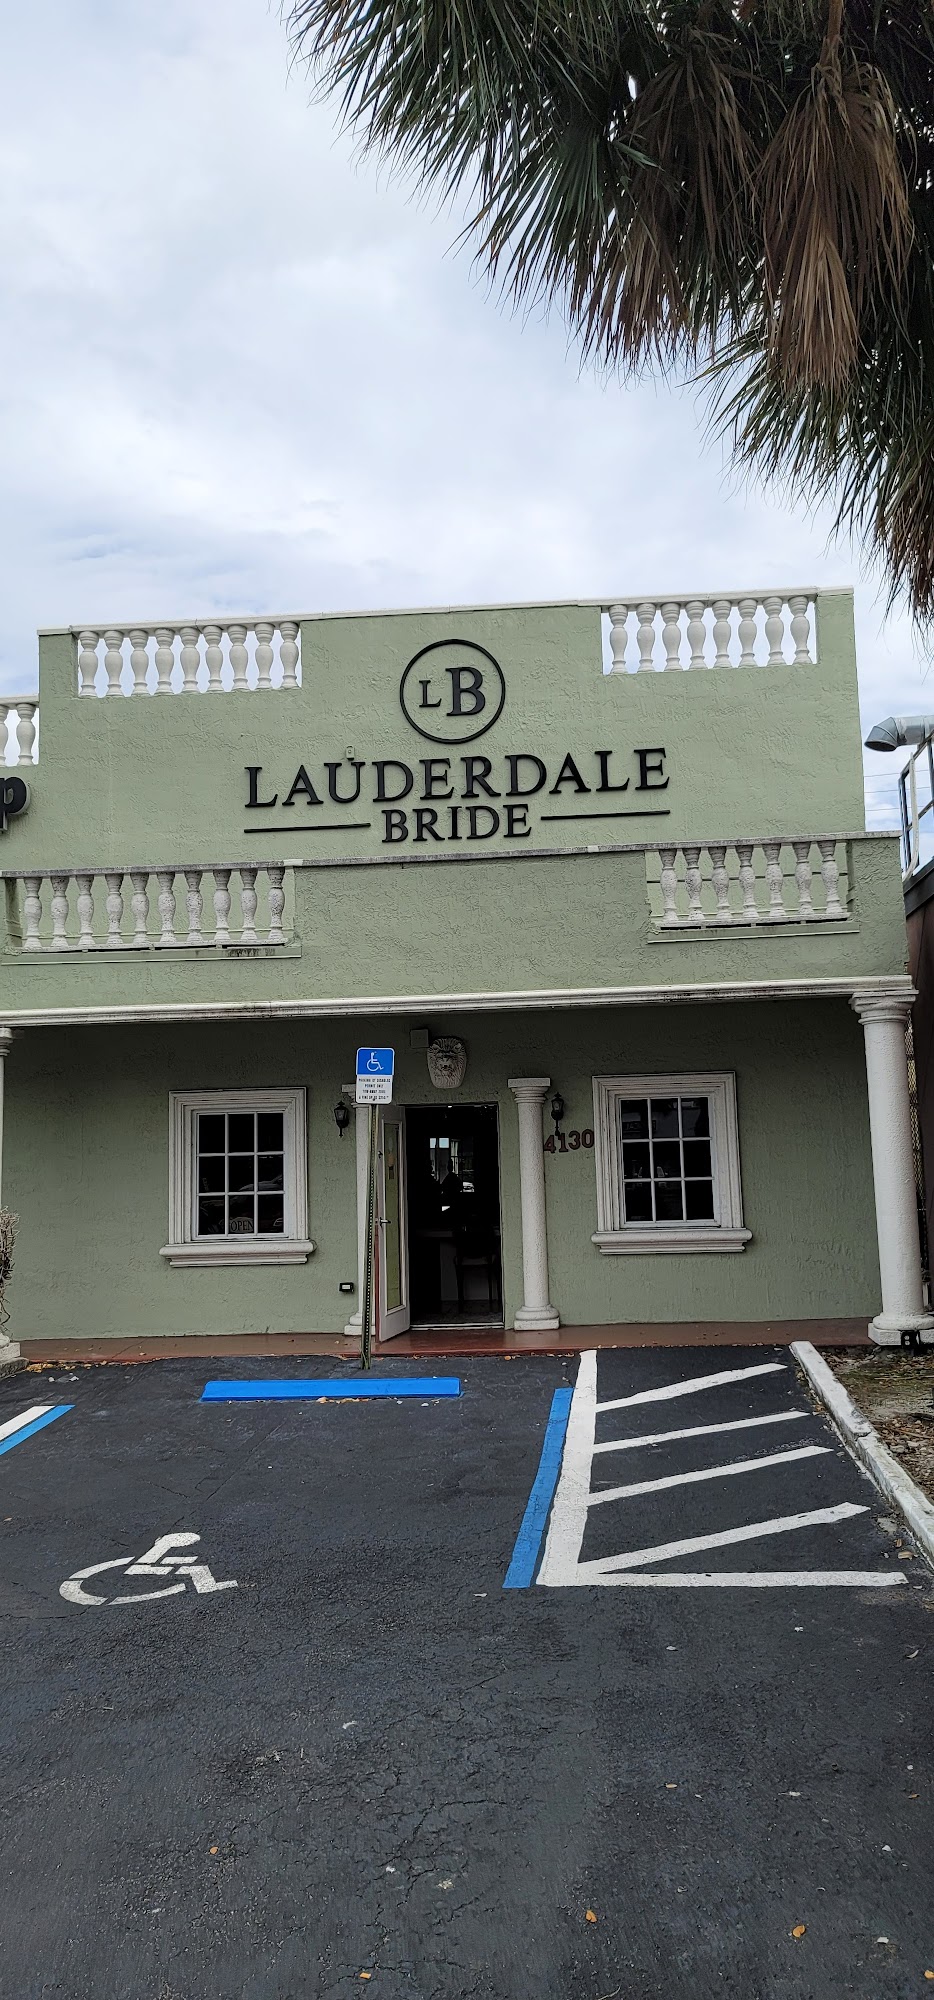 Lauderdale Bride - Bridal Shop